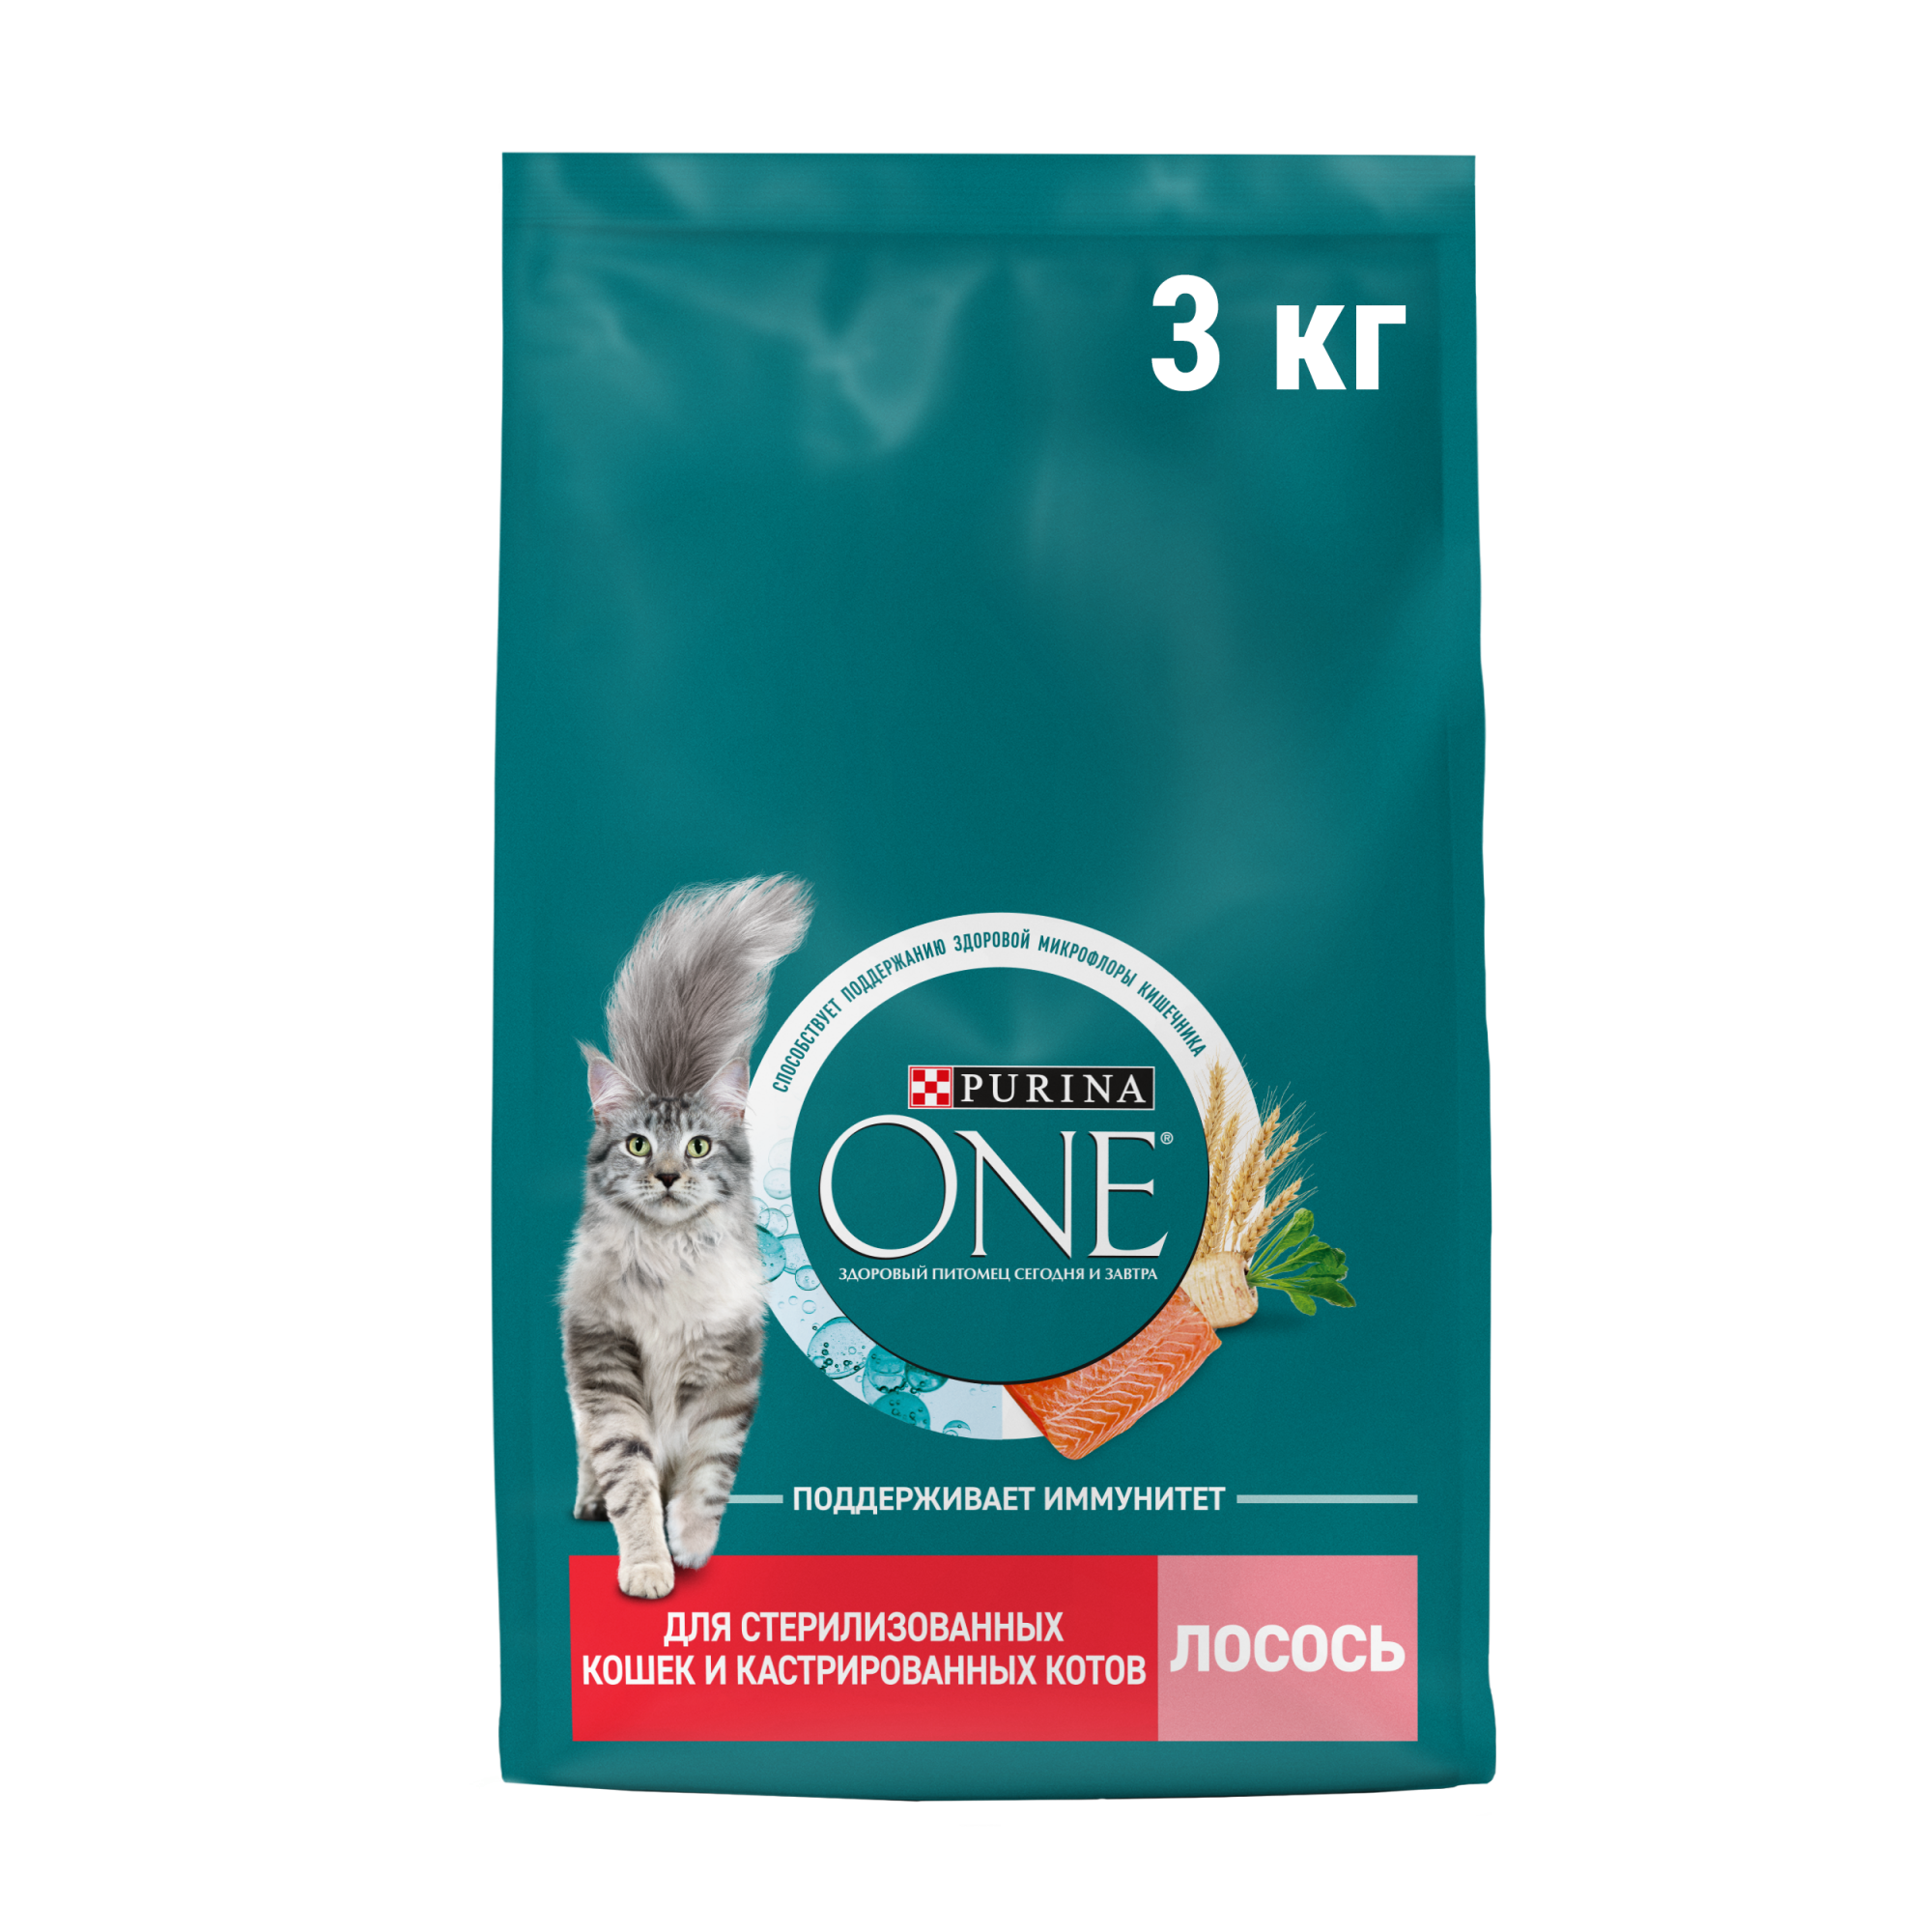 Купить сухой корм для кошек Purina ONE, для стерилизованных и кастрированных, с лососем, 3 кг, цены на Мегамаркет | Артикул: 600016335222